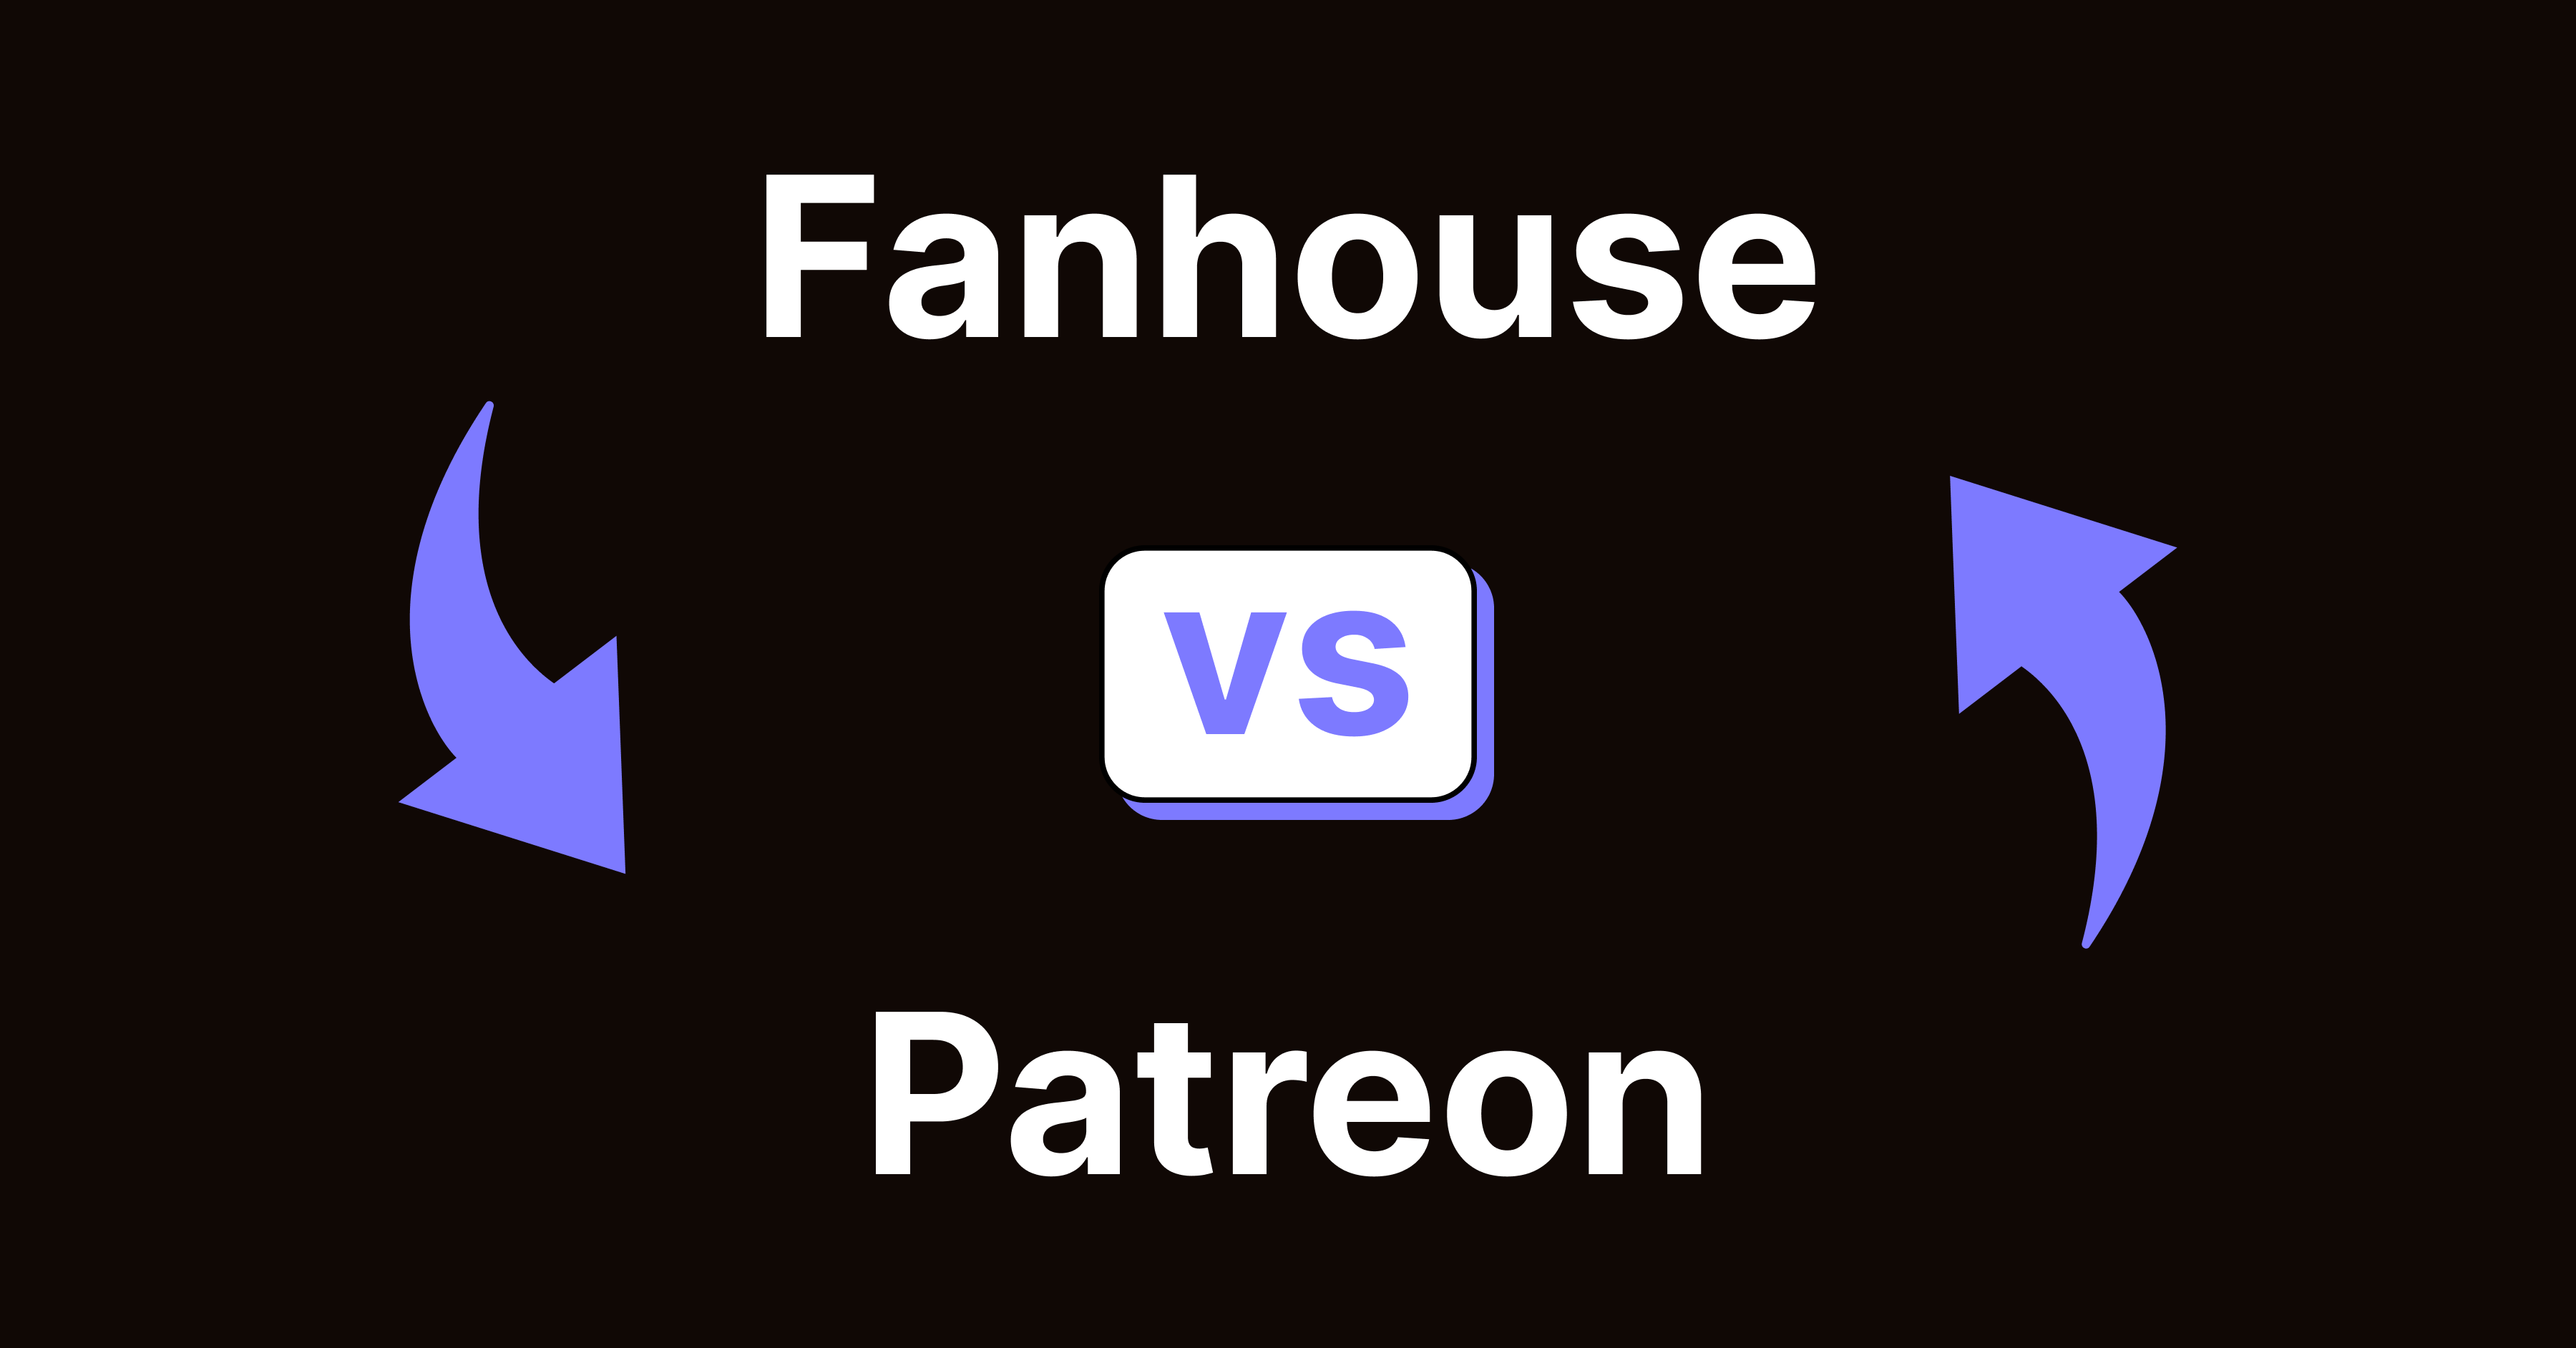 Patreon vs Fanhouse